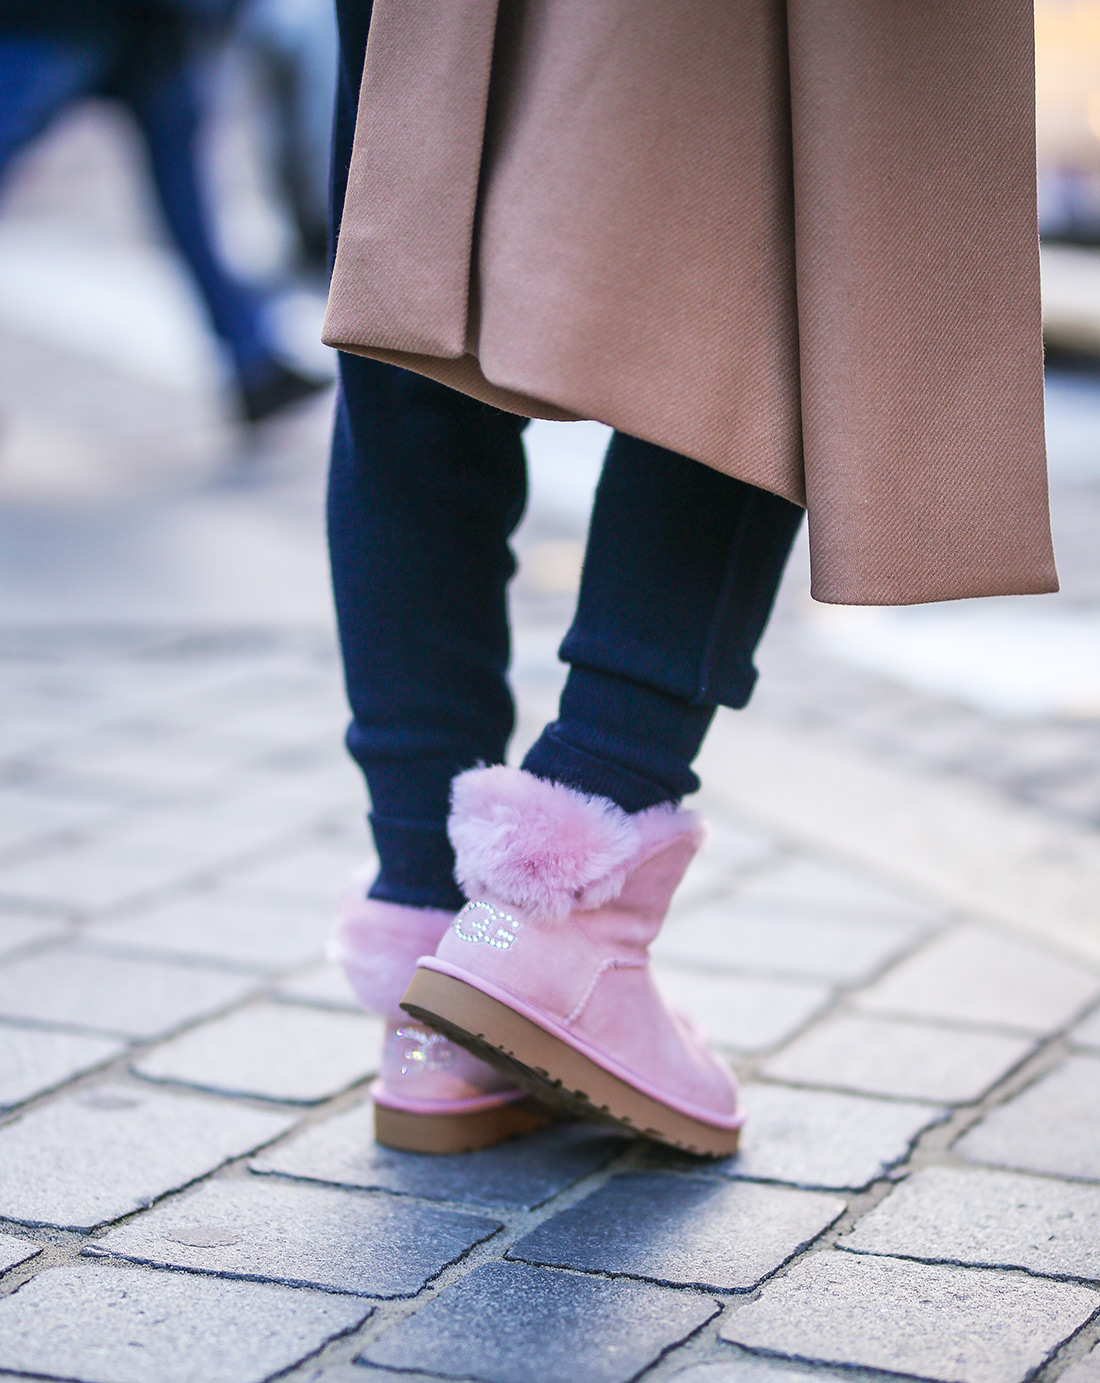 ugg čizme novi modeli najudobnija obuća gdje kupiti zagreb street style ženska moda zima 2019/20 Karla cipele Twinset odjeća Anja Sossich